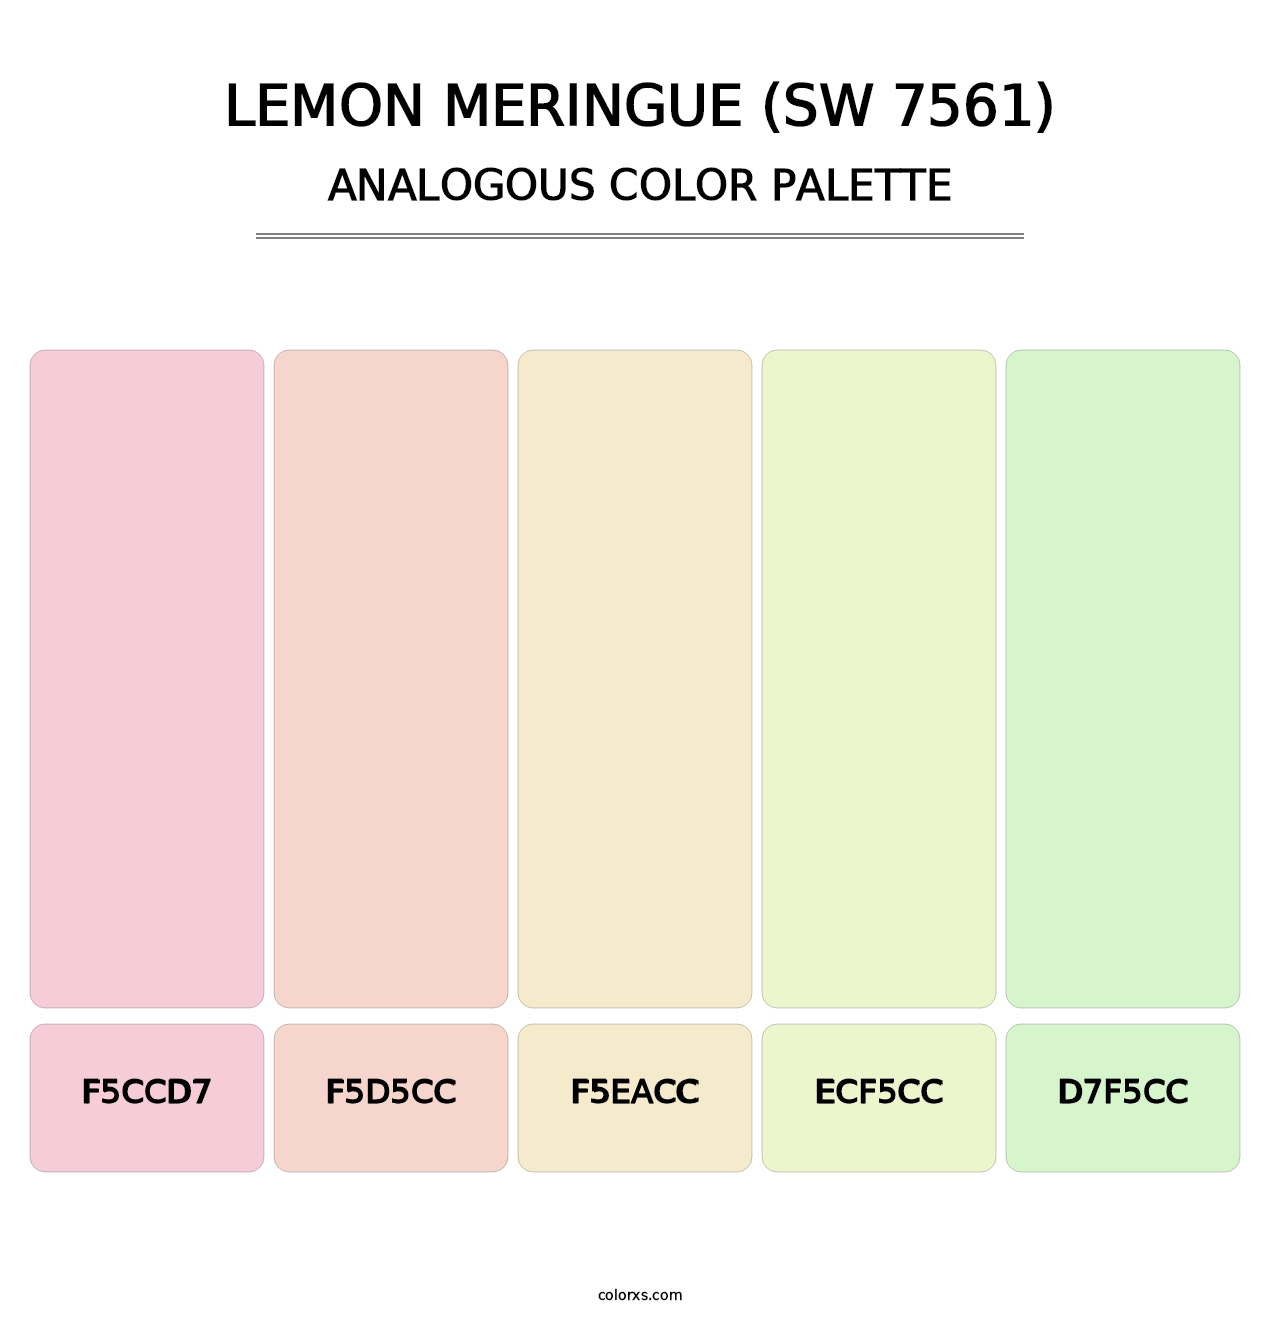 Lemon Meringue (SW 7561) - Analogous Color Palette